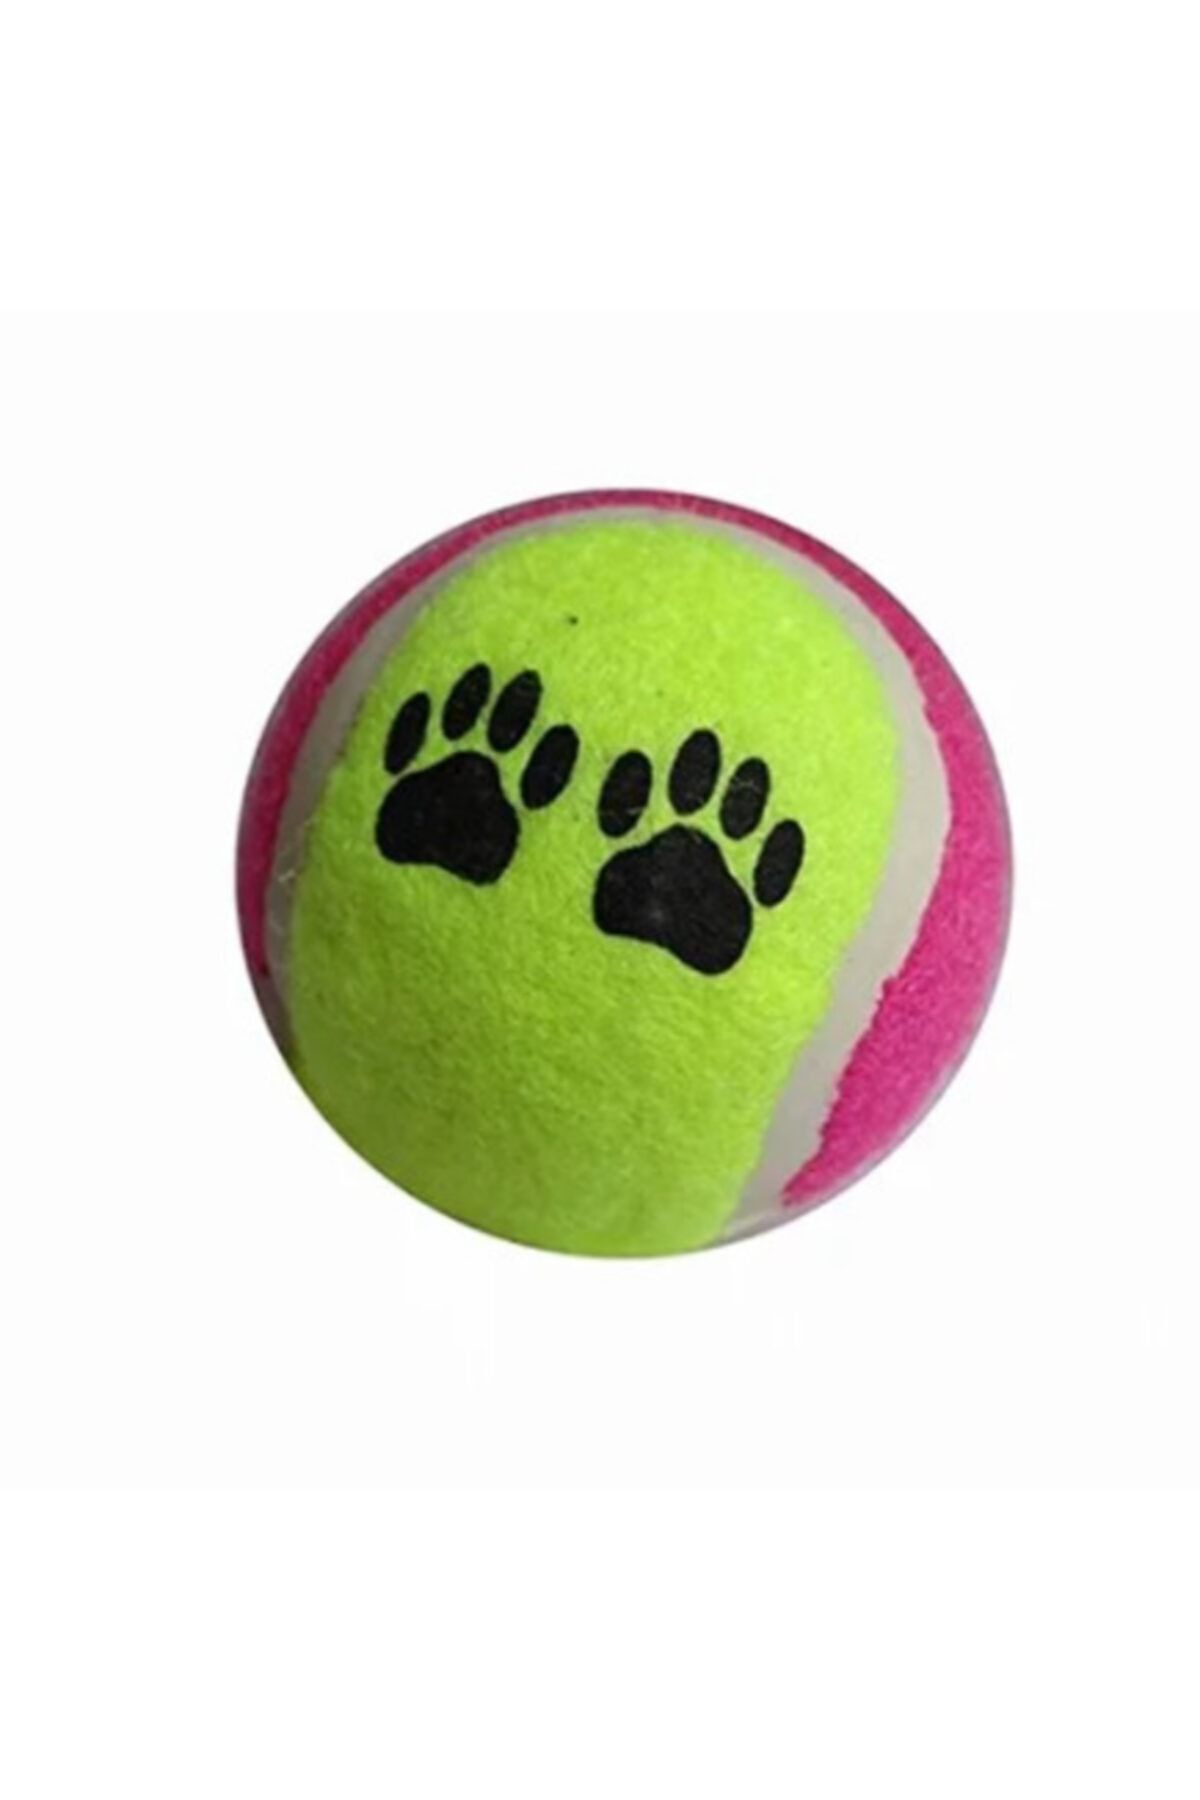 Öğretmen Kırtasiye Evcil Hayvan Sert Oyun Topu Kedi Köpek Oyuncağı 7 Cm